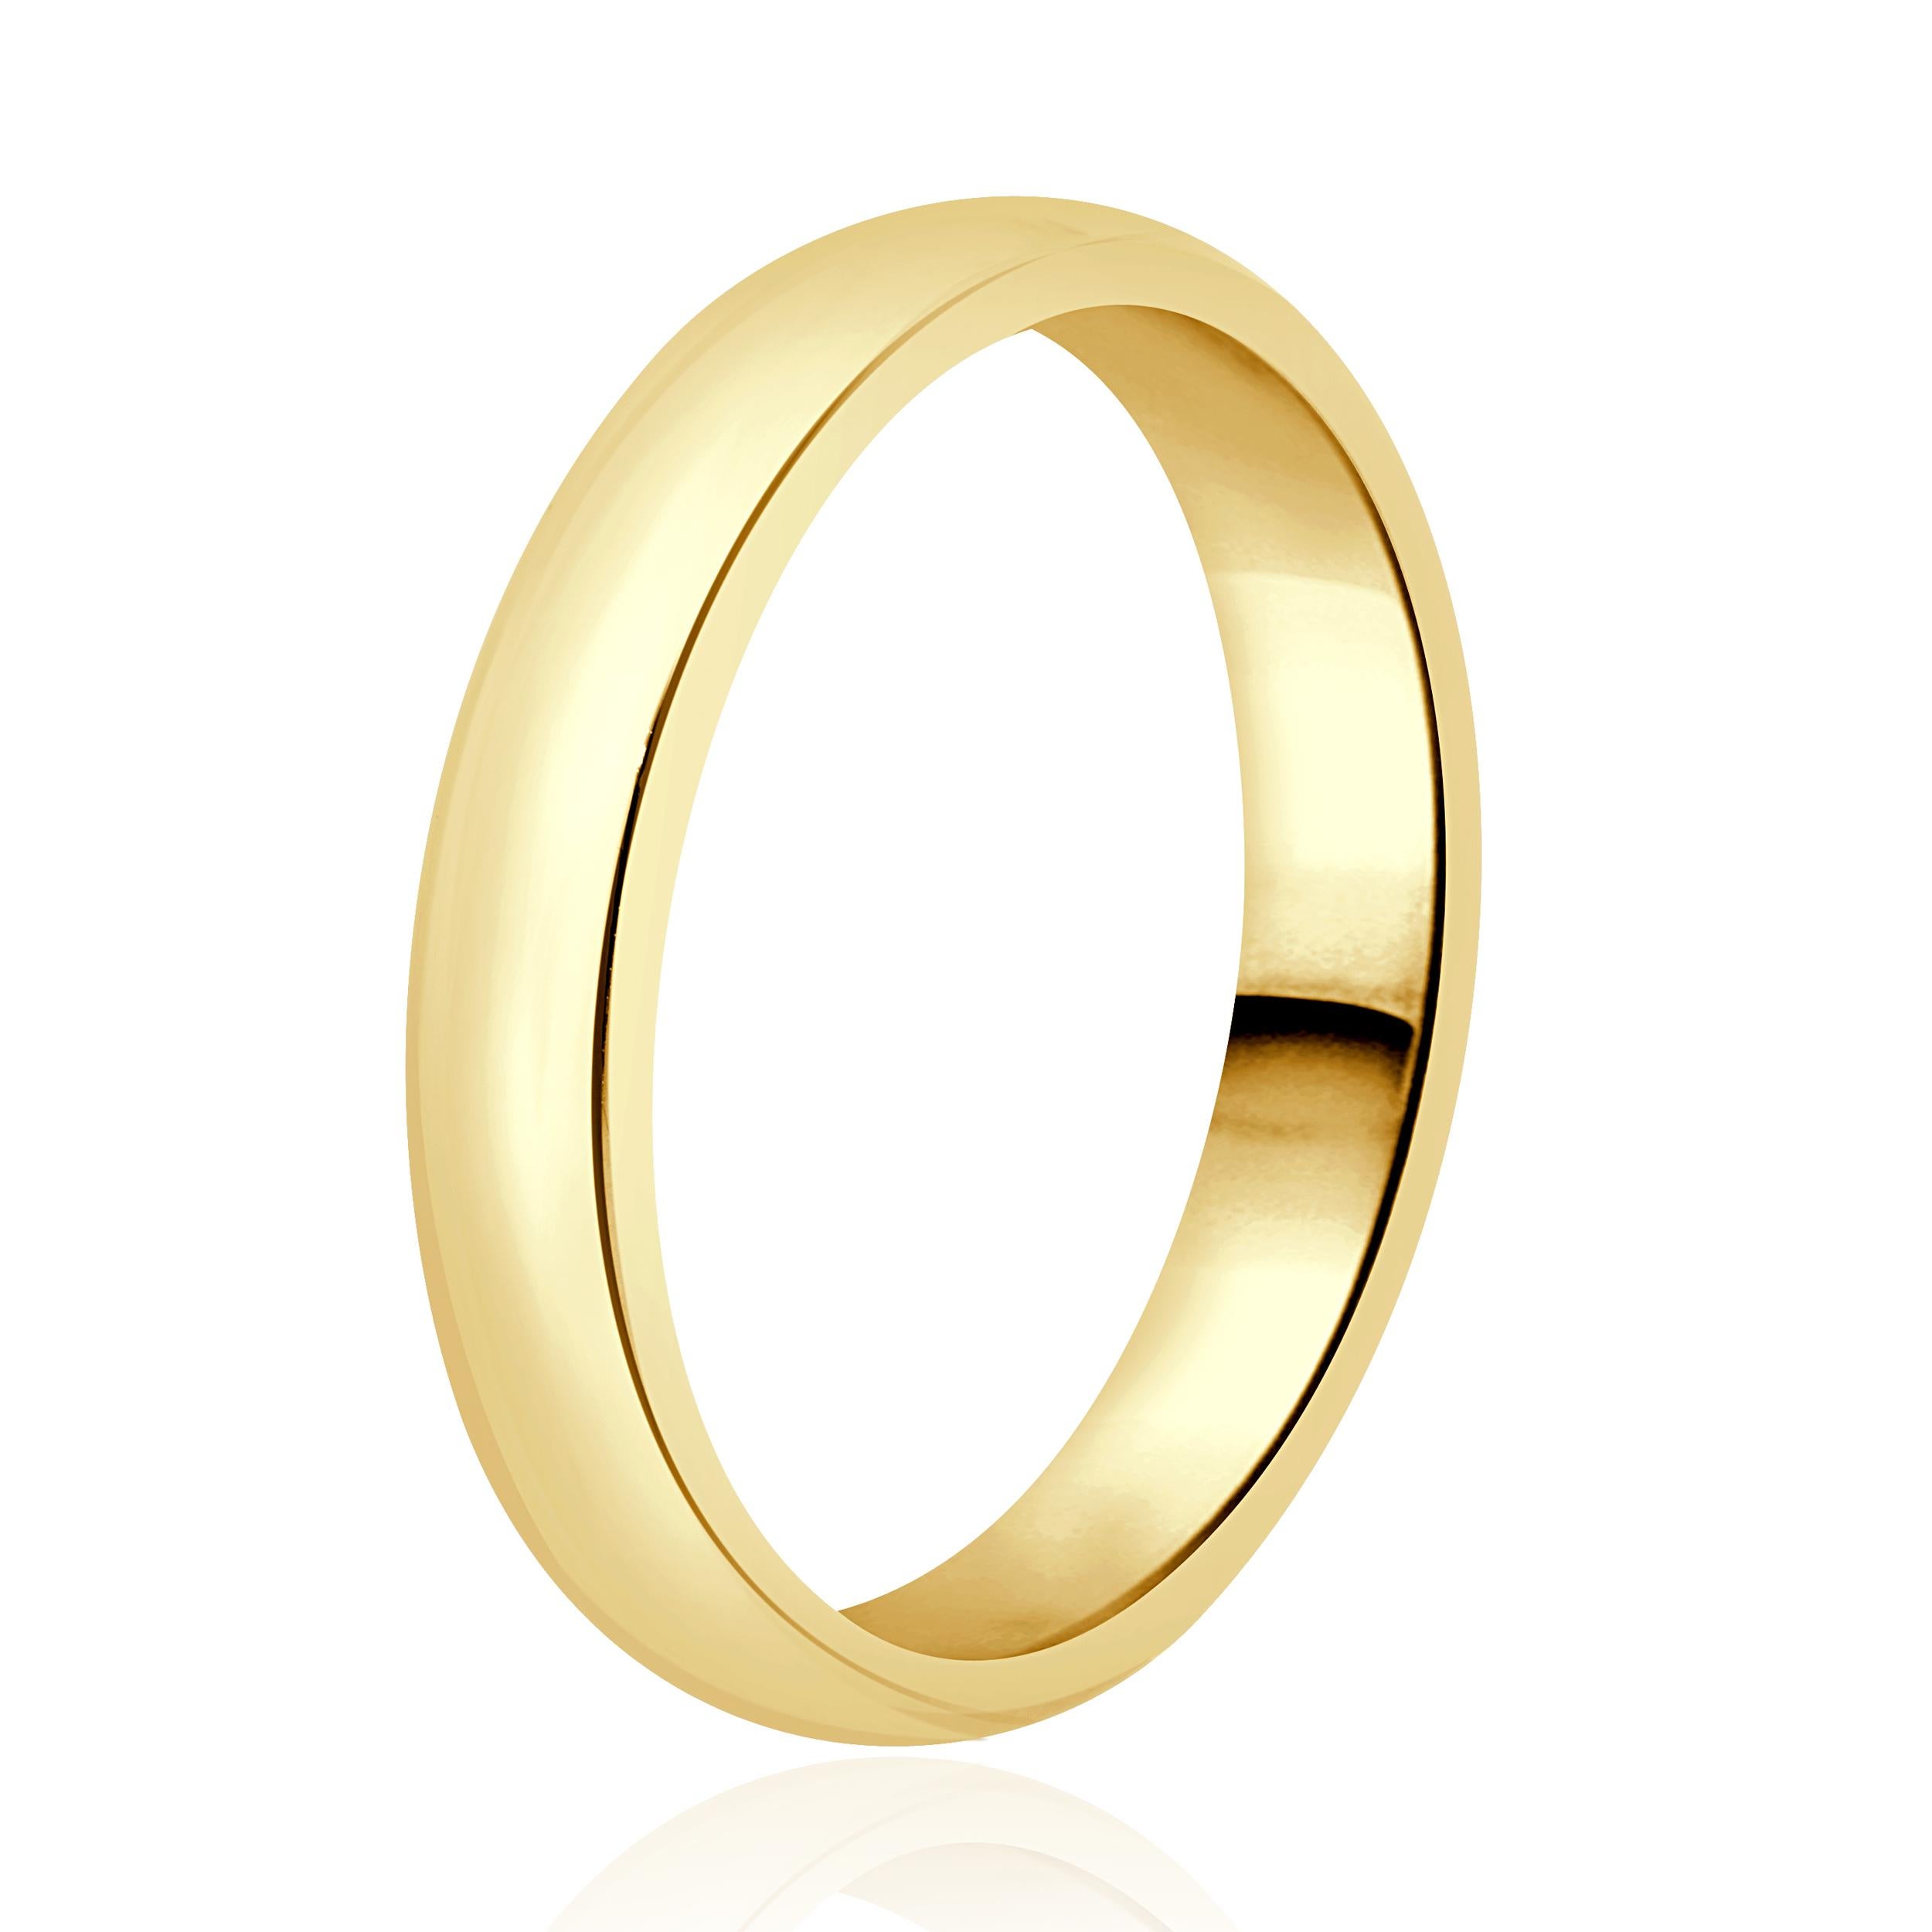 
Designer : Tiffany & Co. 
Matériau : Or jaune 18K
Dimensions : la partie supérieure de l'anneau mesure 5 mm de large
Poids : 8,08 grammes
Taille : 13 tailles disponibles 

Pas de boîte ni de papiers inclus
